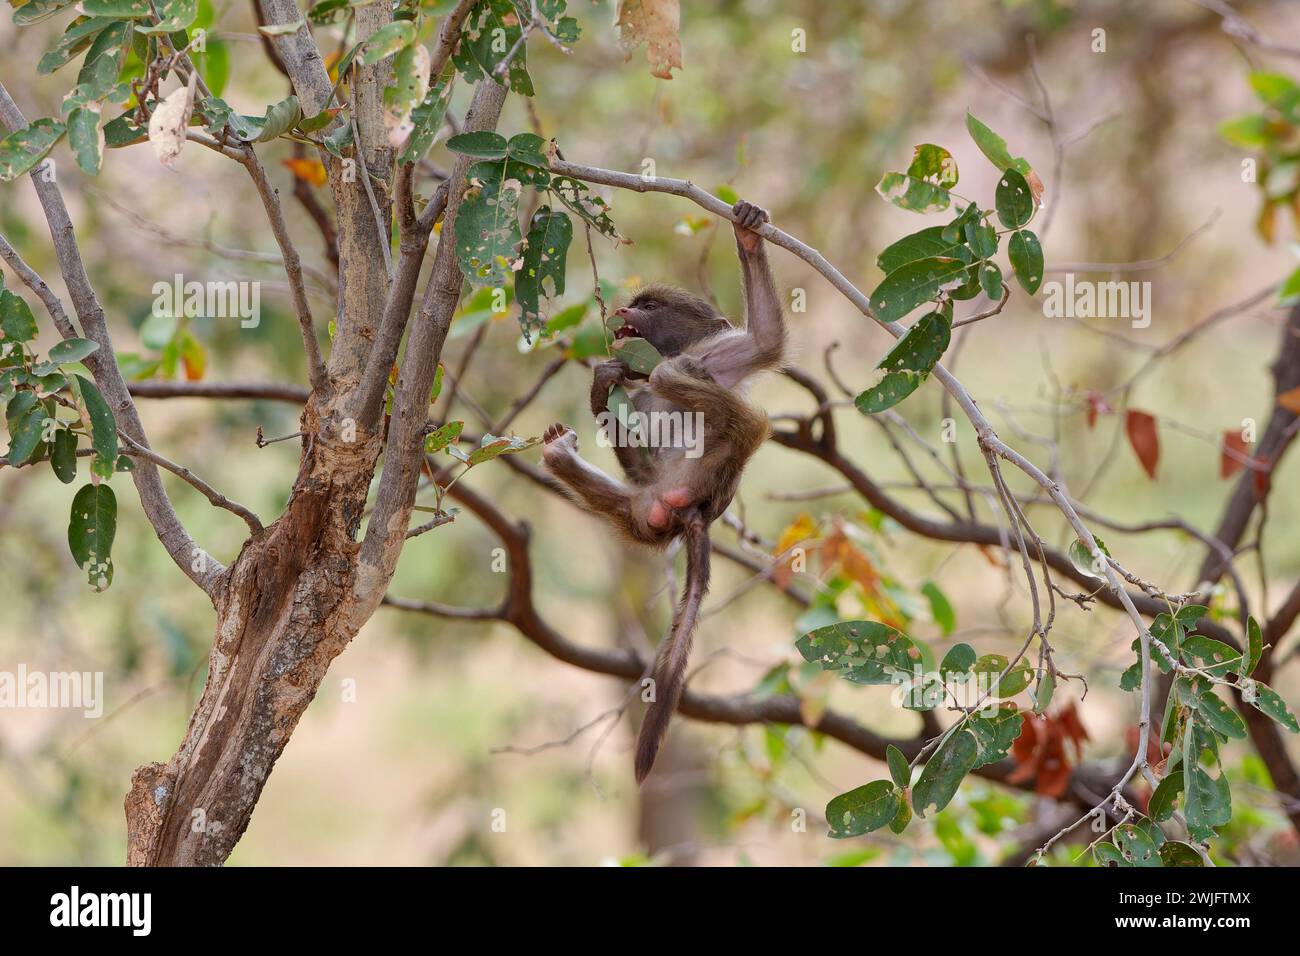 Babouin Chacma (Papio ursinus), jeune singe suspendu à une branche d'arbre, balançant, se nourrissant de feuilles, Parc national Kruger, Afrique du Sud, Afrique Banque D'Images